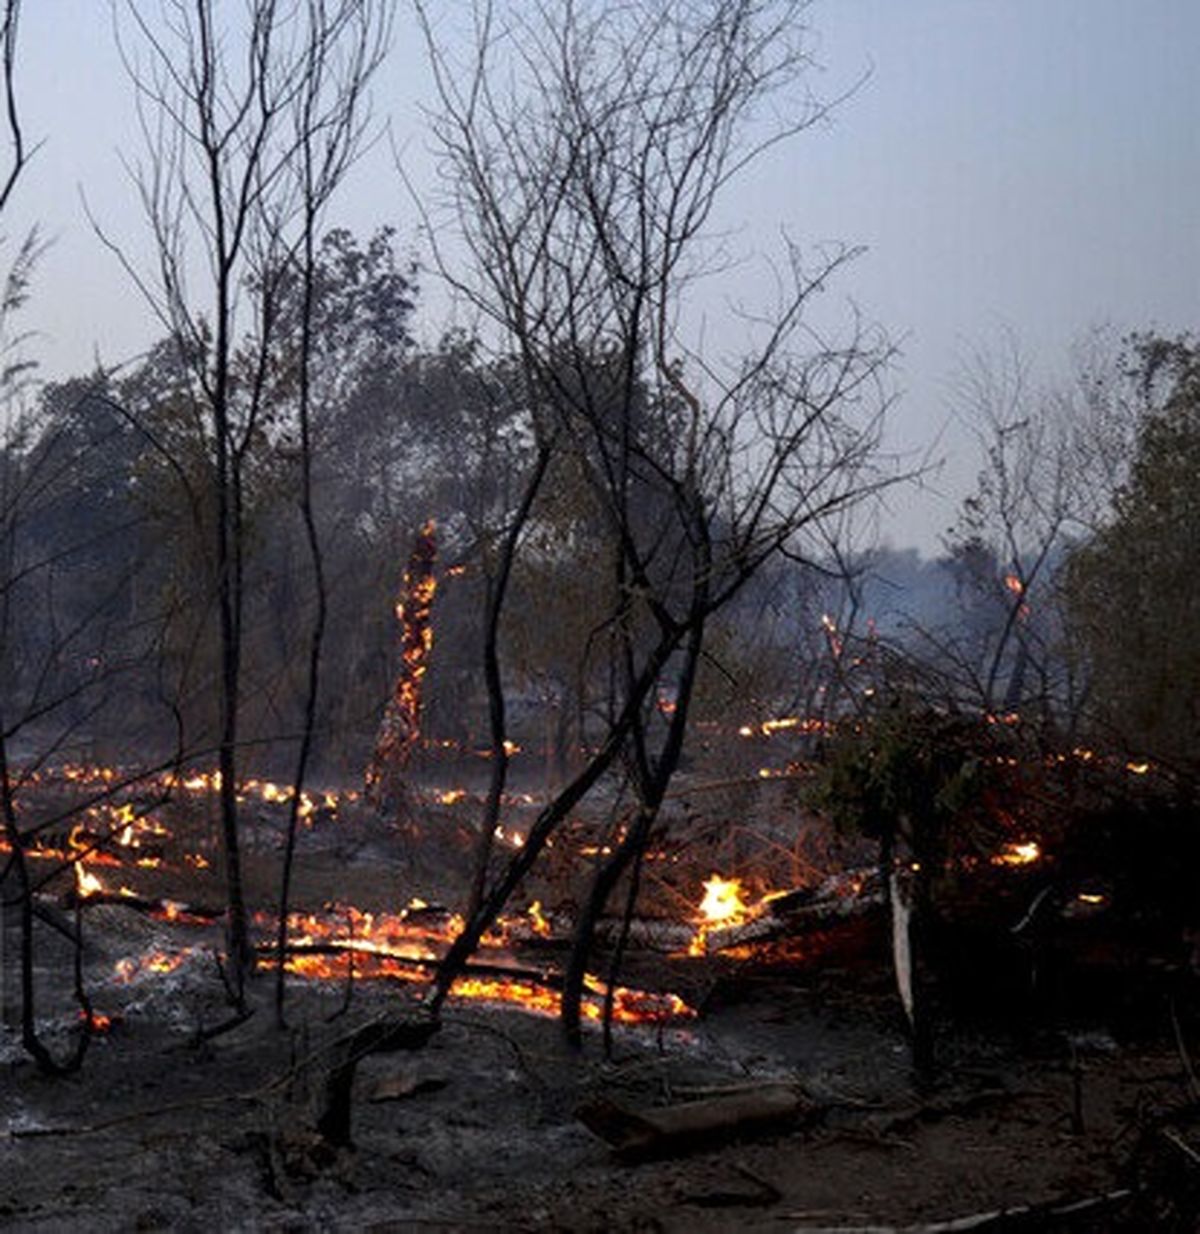 آتش سوزی ۴۵ هکتاری در اراضی جنگلی گیلان/ به تاج درختان آسیب نرسیده